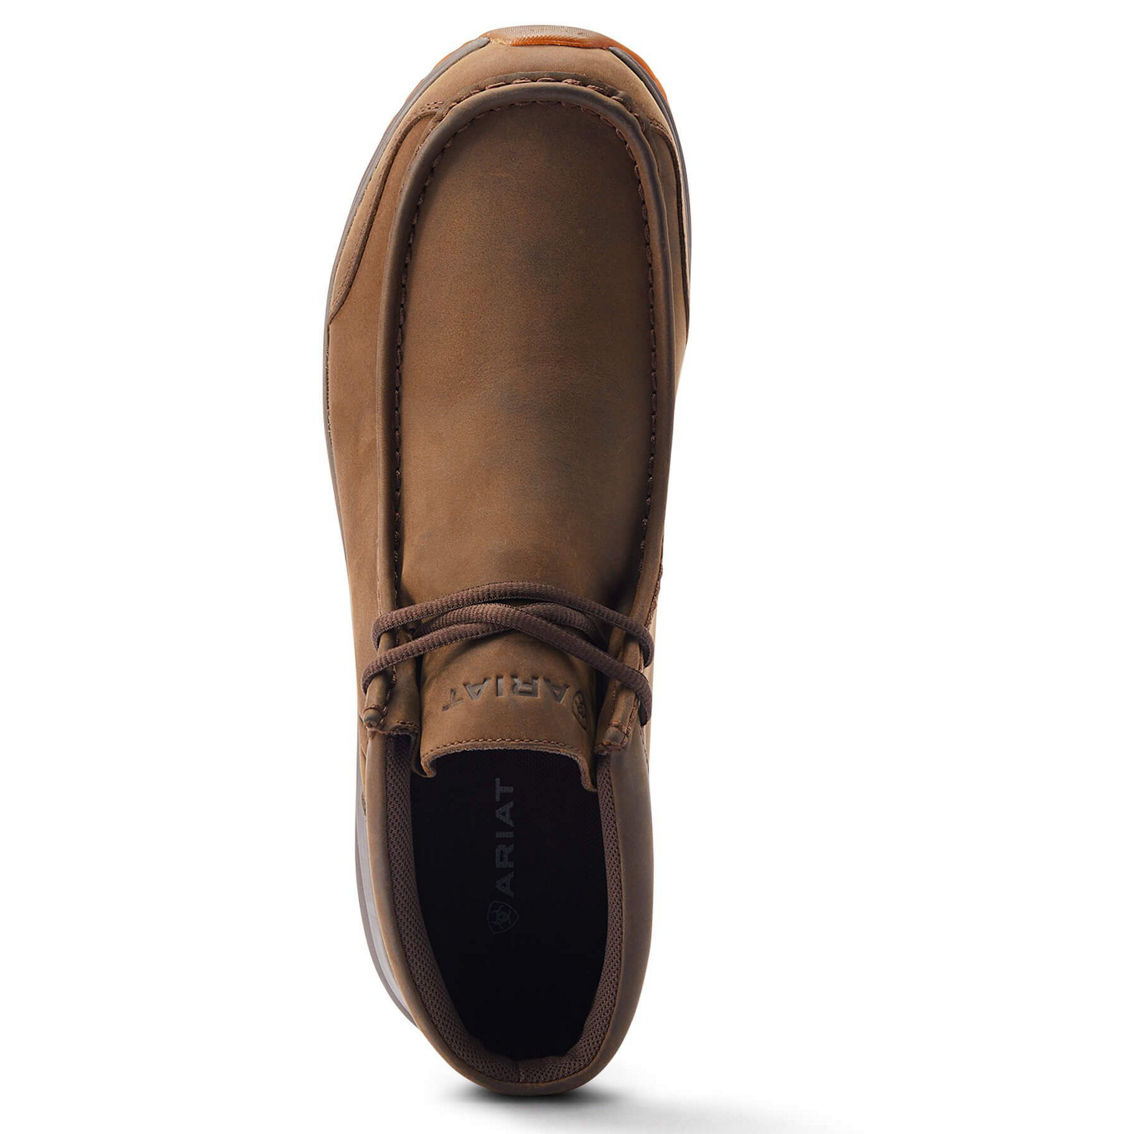 Ariat Men's Spitfire Outdoor Waterproof | Boots | Shoes | Shop The Exchange